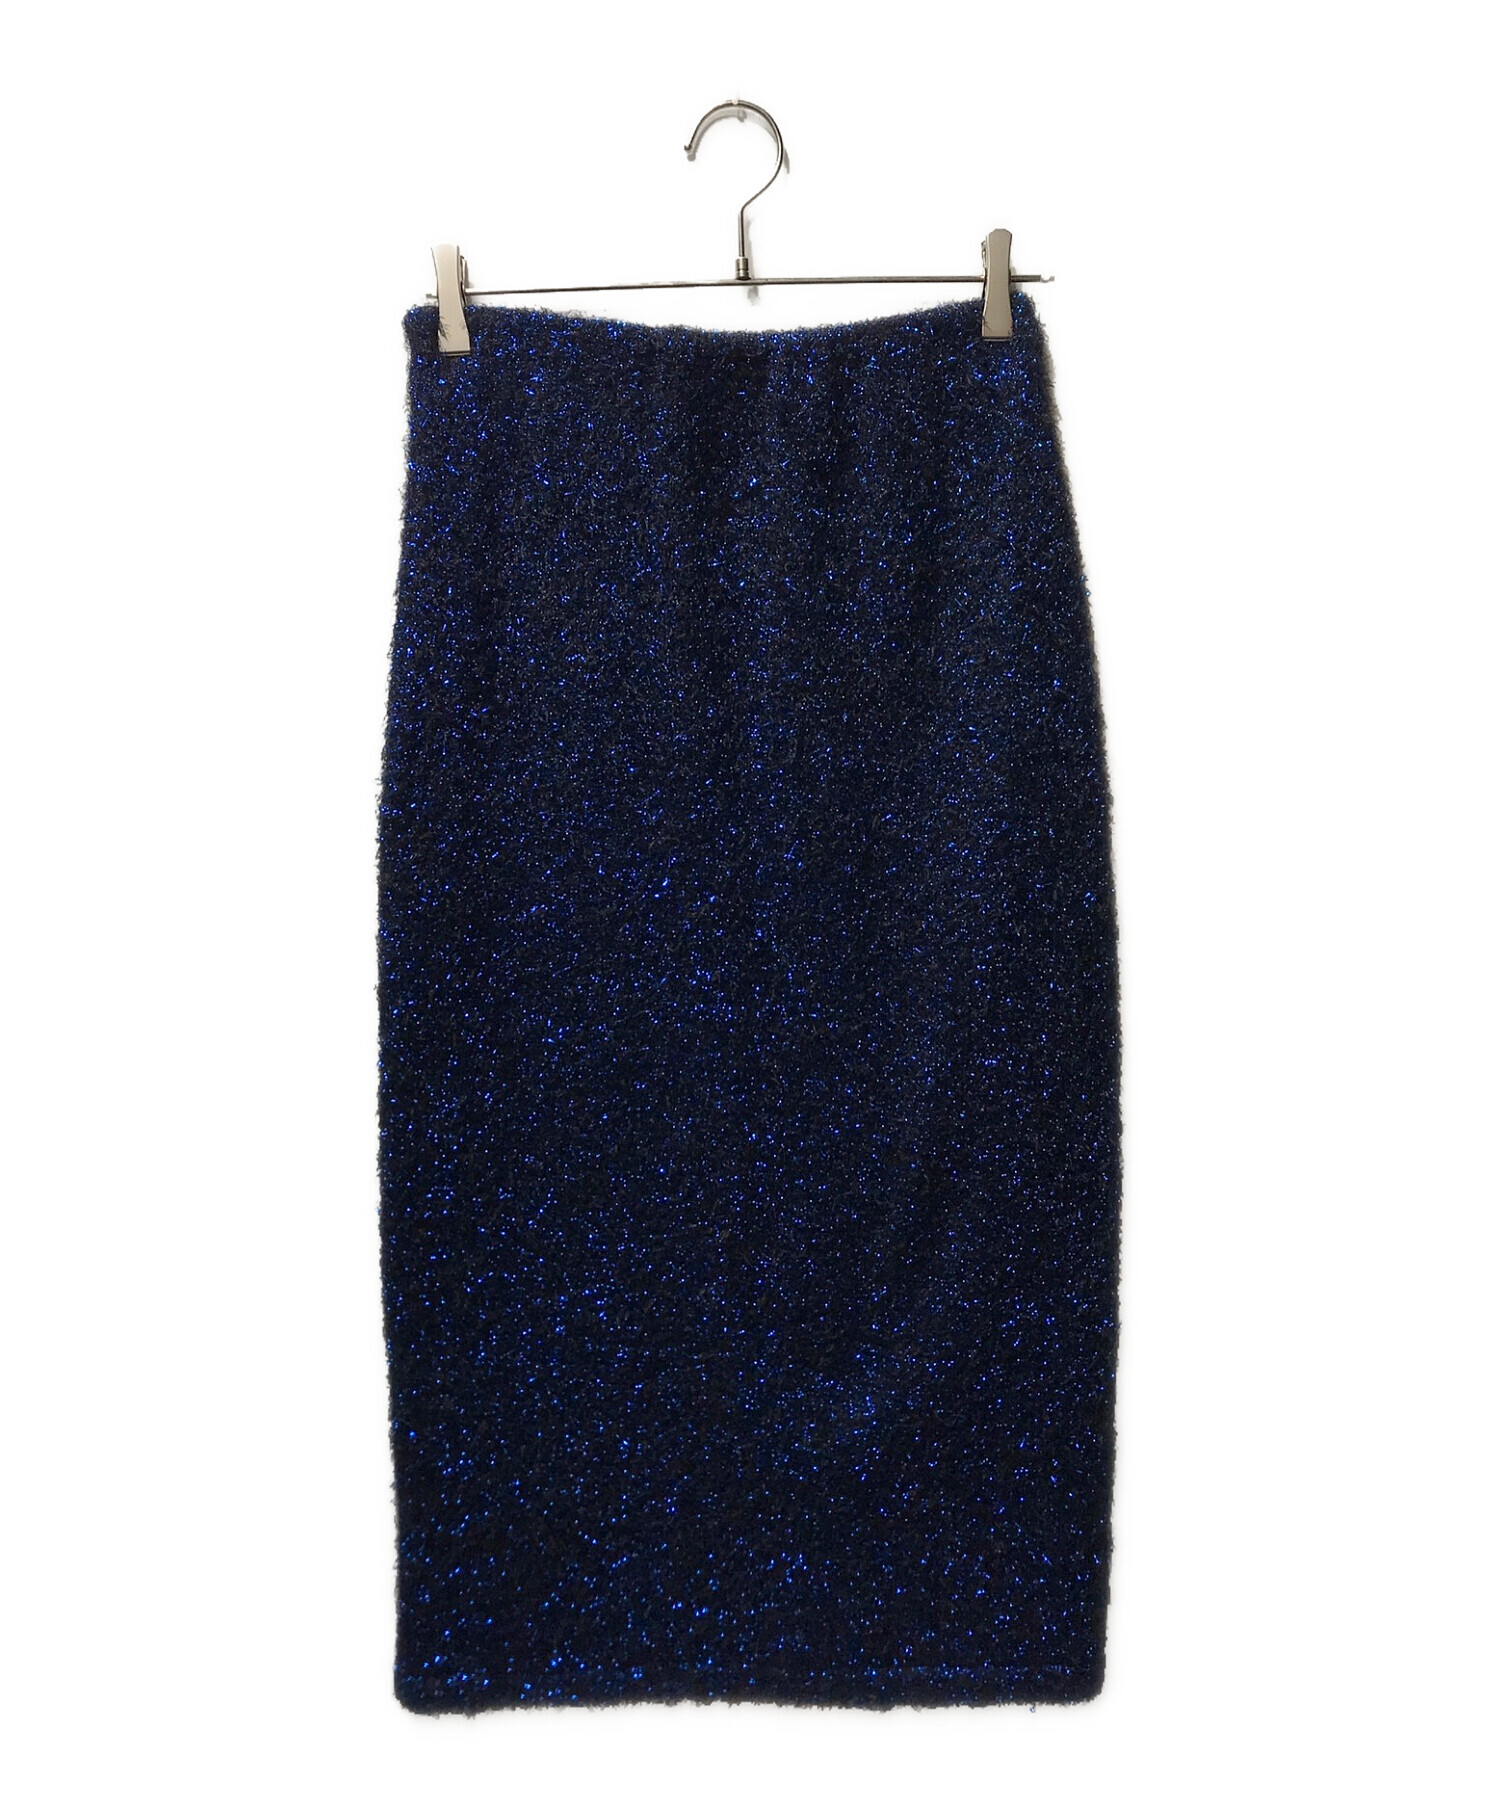 MAISON SPECIAL (メゾンスペシャル) メタリックヤーンタイトスカート 21221515102 ブルー サイズ:F